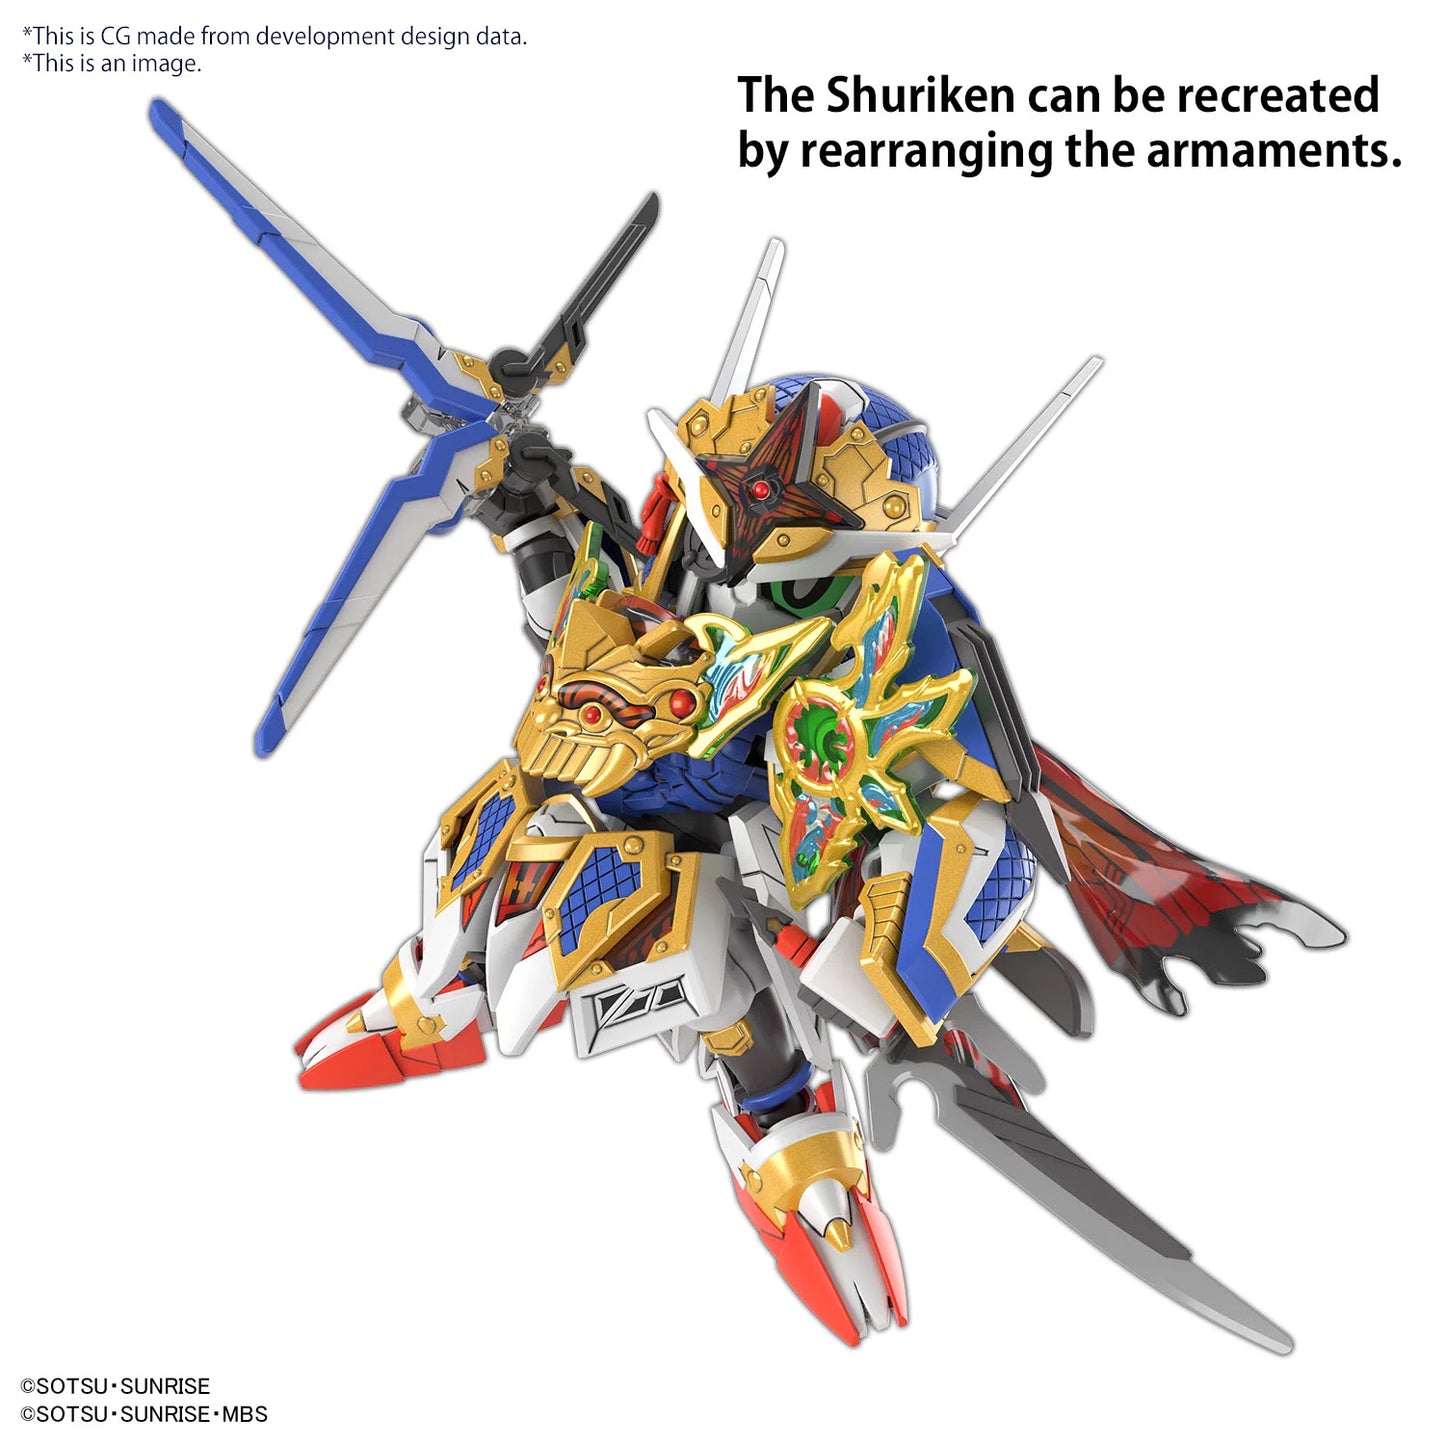 GUNDAM - SDWH - Onmitsu Gundam Aerial